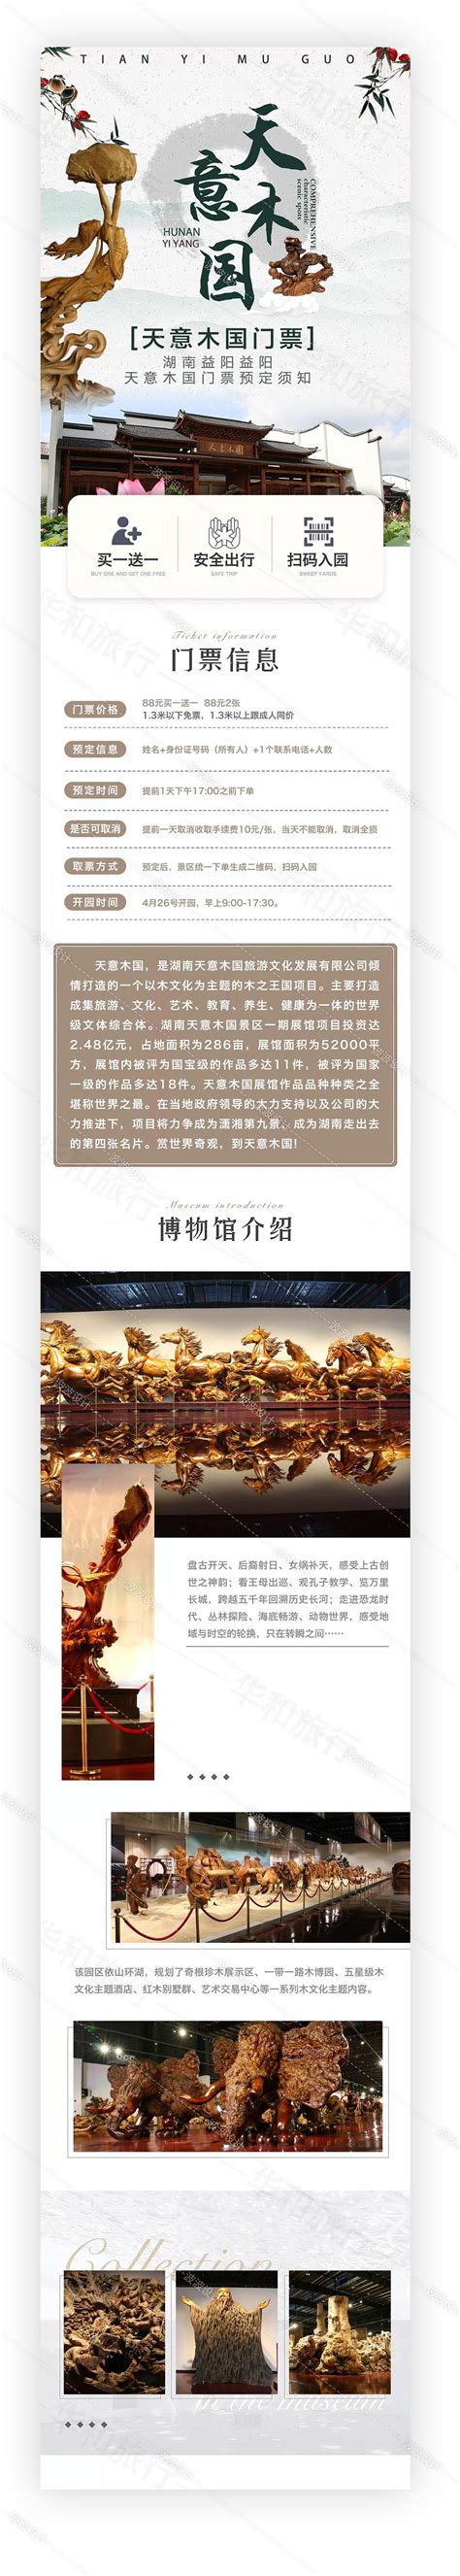 大通湖工业园 - 益阳对外宣传官方网站